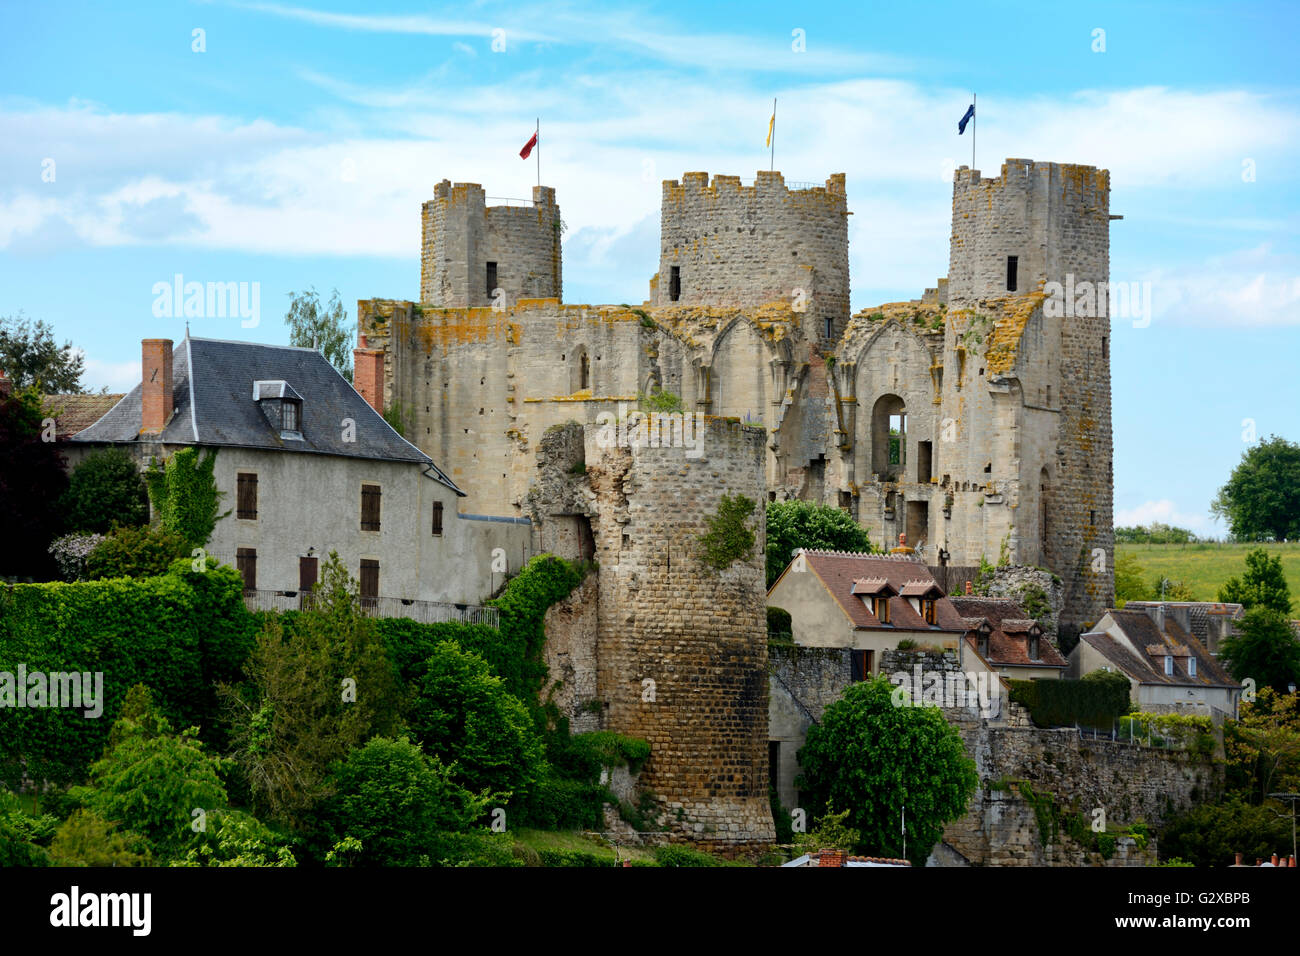 Bourbon-l’Archambault castle, Bourbon l'Archambault, Département Allier, Auvergne, France Stock Photo